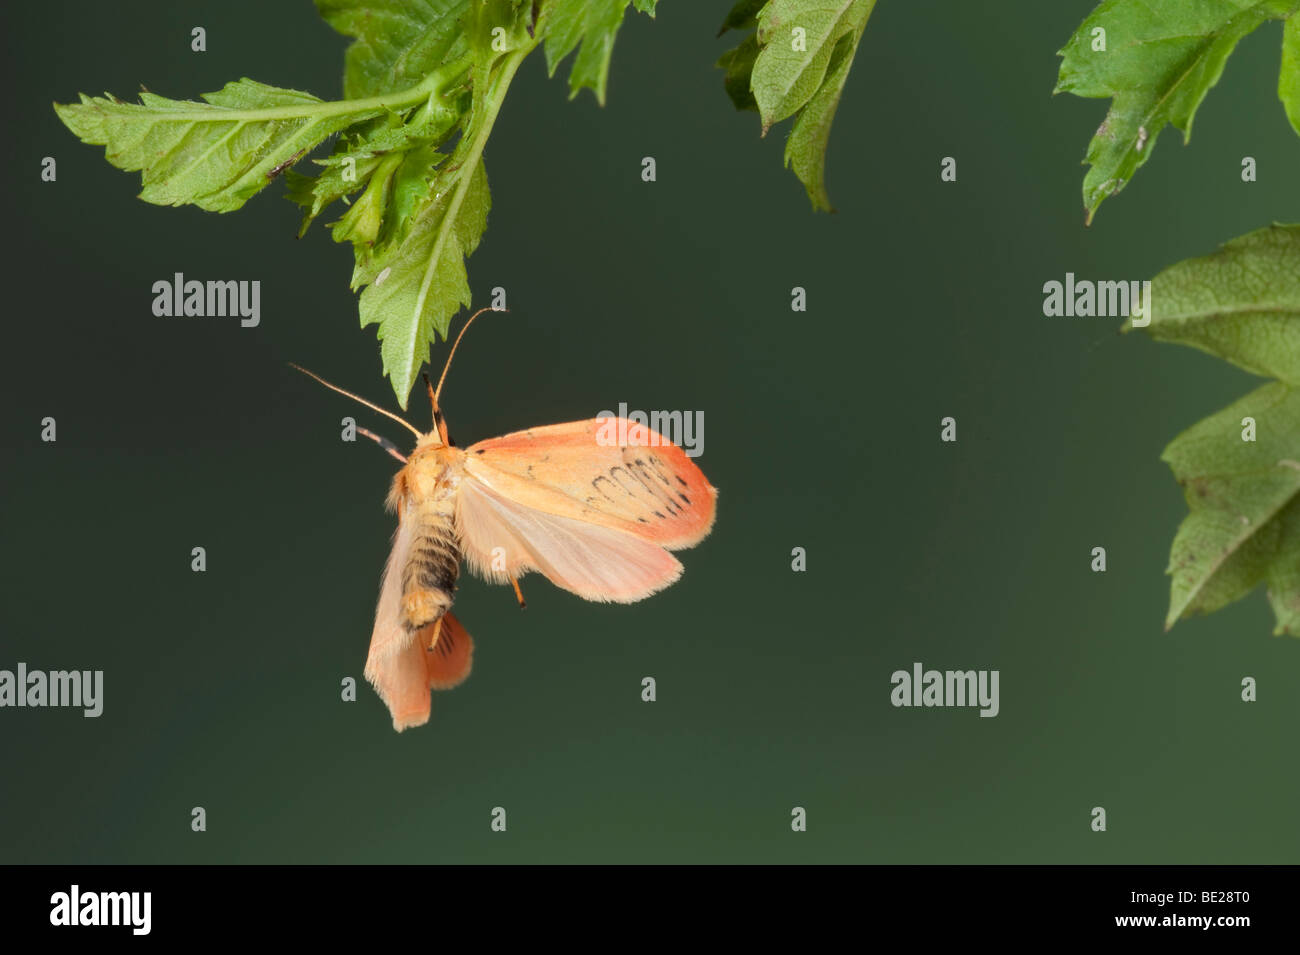 Rosy un fante Moth Miltochrista miniata in volo il volo libero ad alta velocità tecnica fotografica Foto Stock